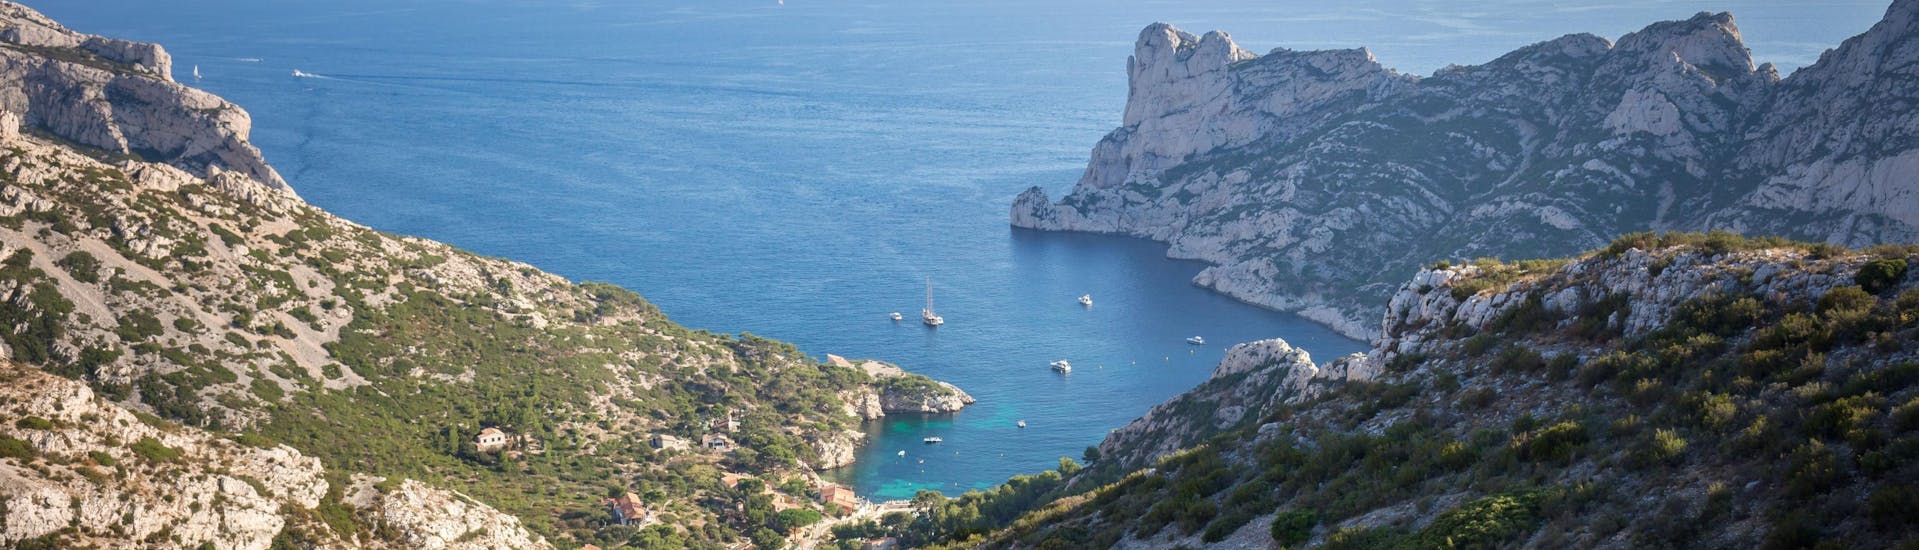 Vue sur la calanque de Sormiou avec des bateaux naviguant dans la belle mer turquoise de la Méditerranée. Marseille, Cassis.